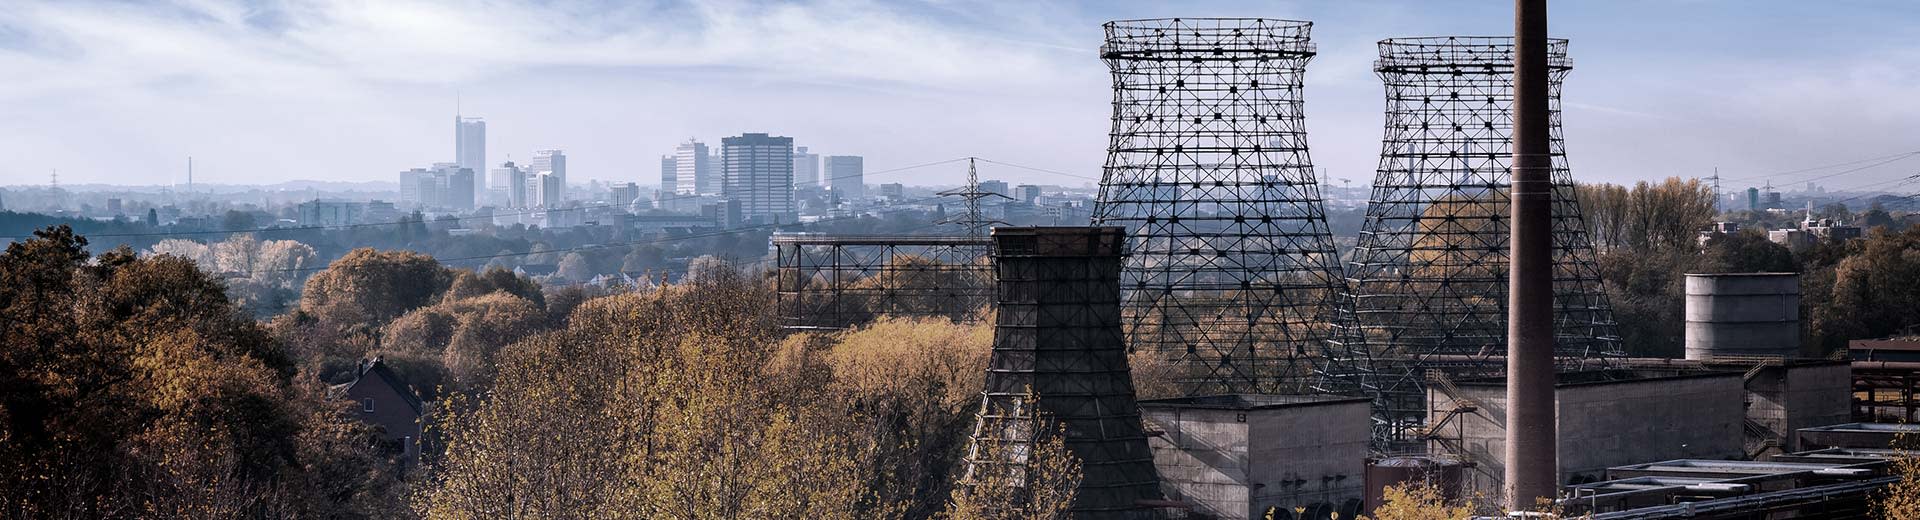 Le paysage industriel d'Essen, avec des cheminées d'usine désaffectées au premier plan.